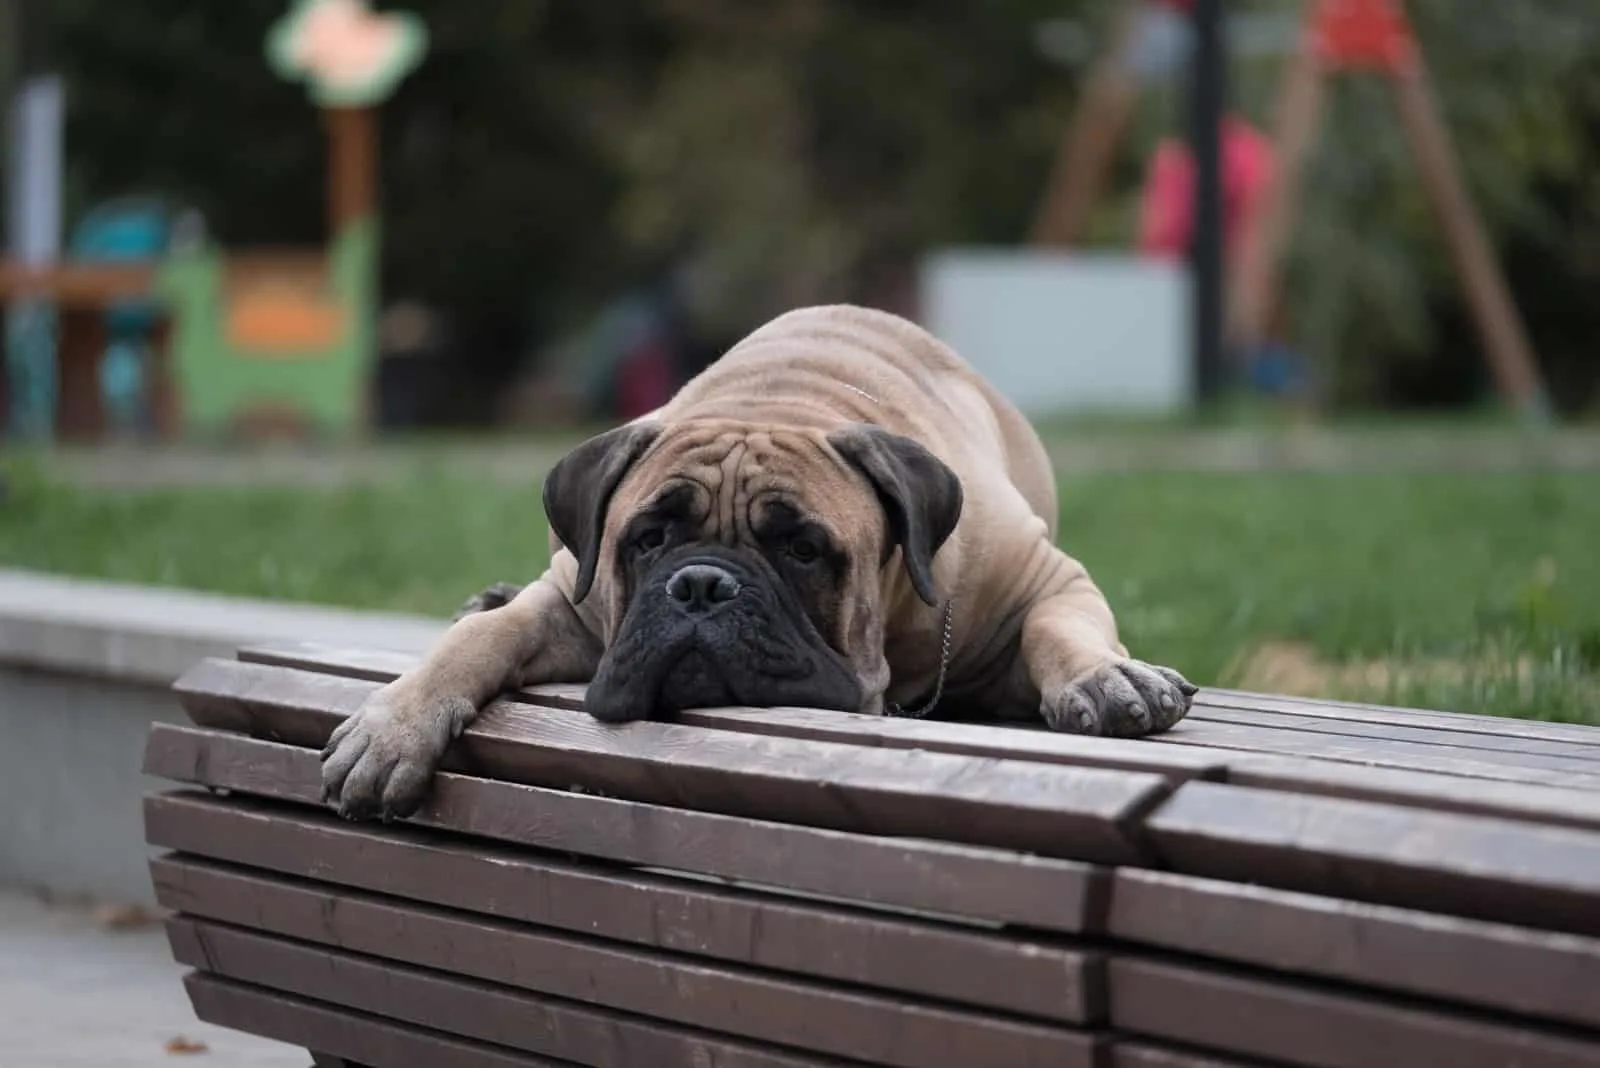 bullmastiff dog lying on the bench in park